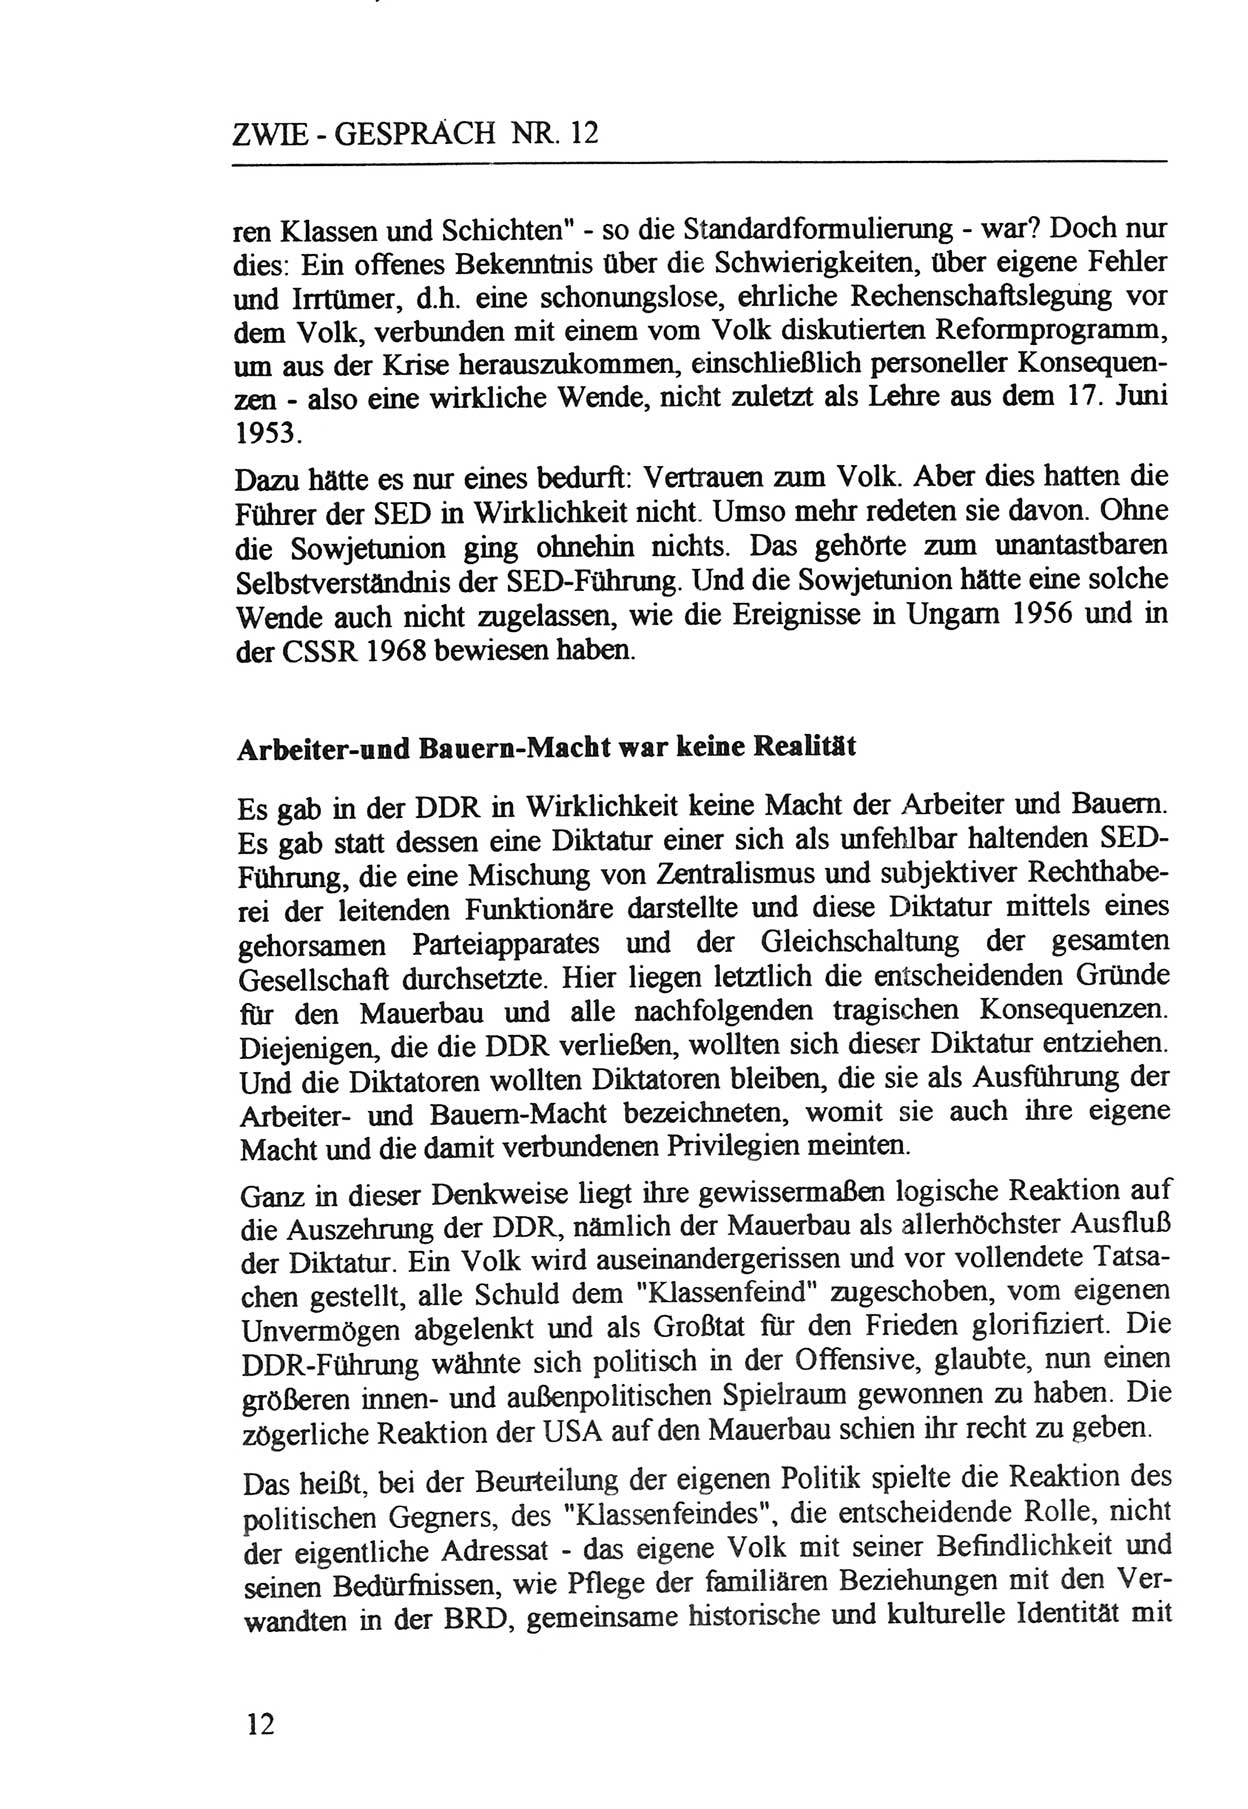 Zwie-Gespräch, Beiträge zur Aufarbeitung der Staatssicherheits-Vergangenheit [Deutsche Demokratische Republik (DDR)], Ausgabe Nr. 12, Berlin 1993, Seite 12 (Zwie-Gespr. Ausg. 12 1993, S. 12)